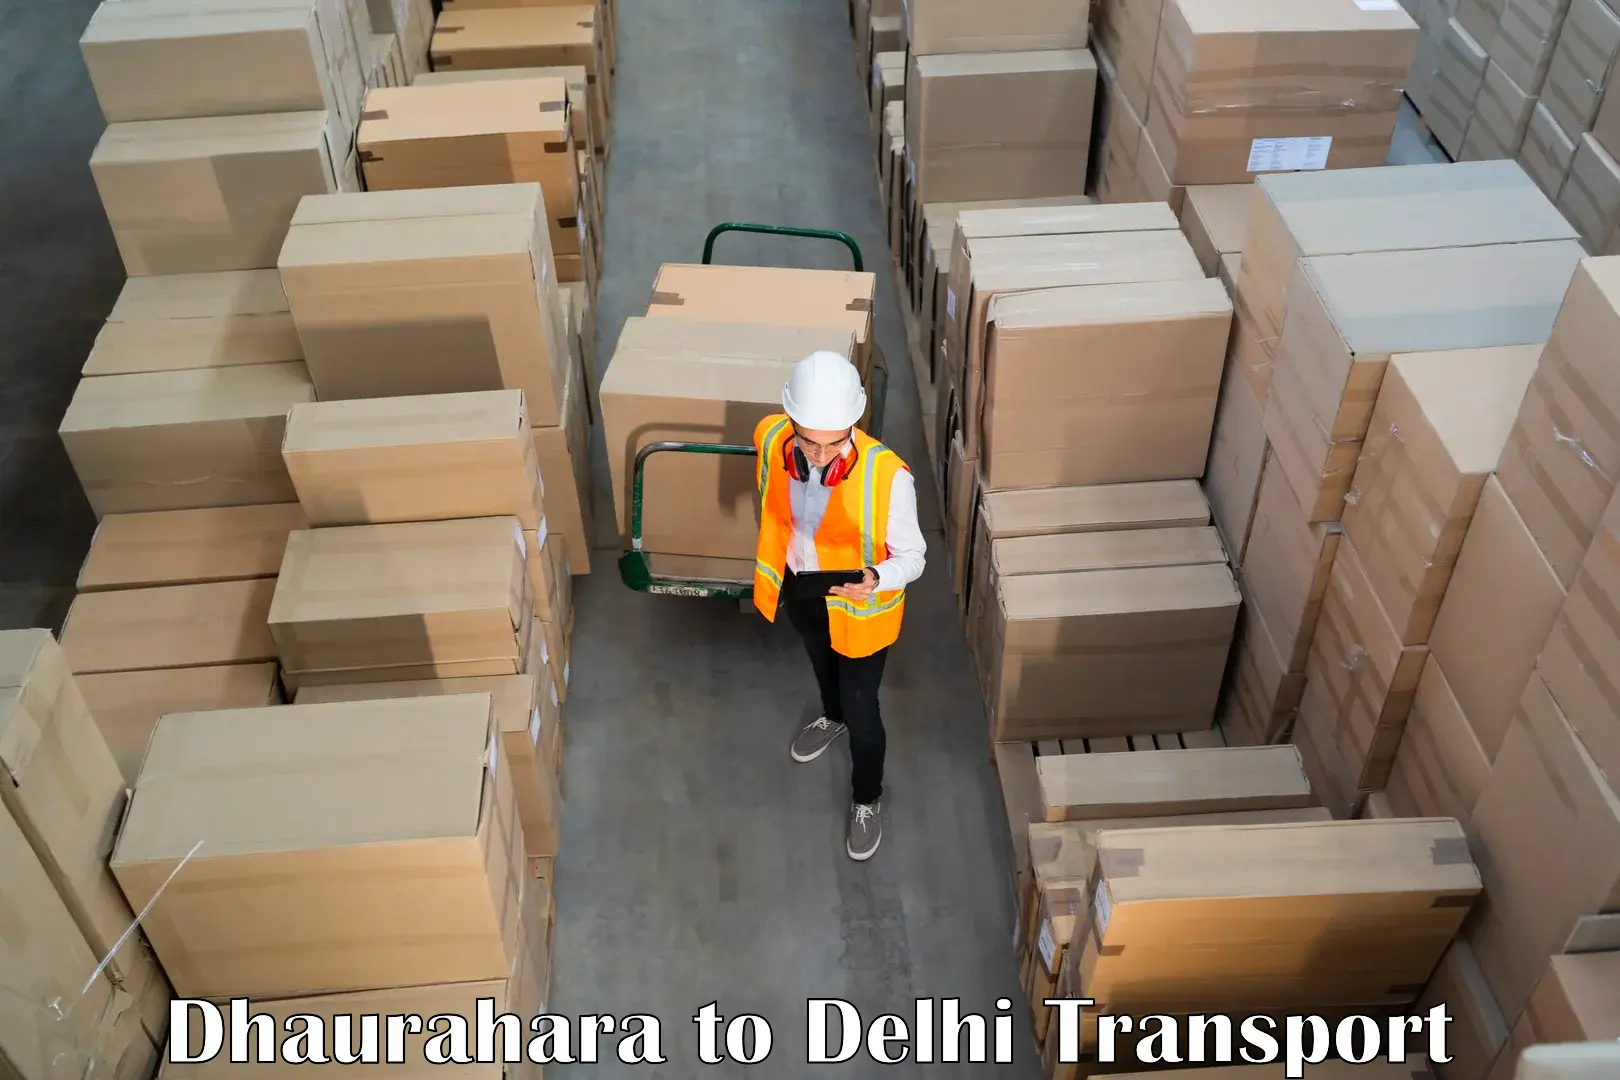 Air freight transport services Dhaurahara to Jamia Millia Islamia New Delhi